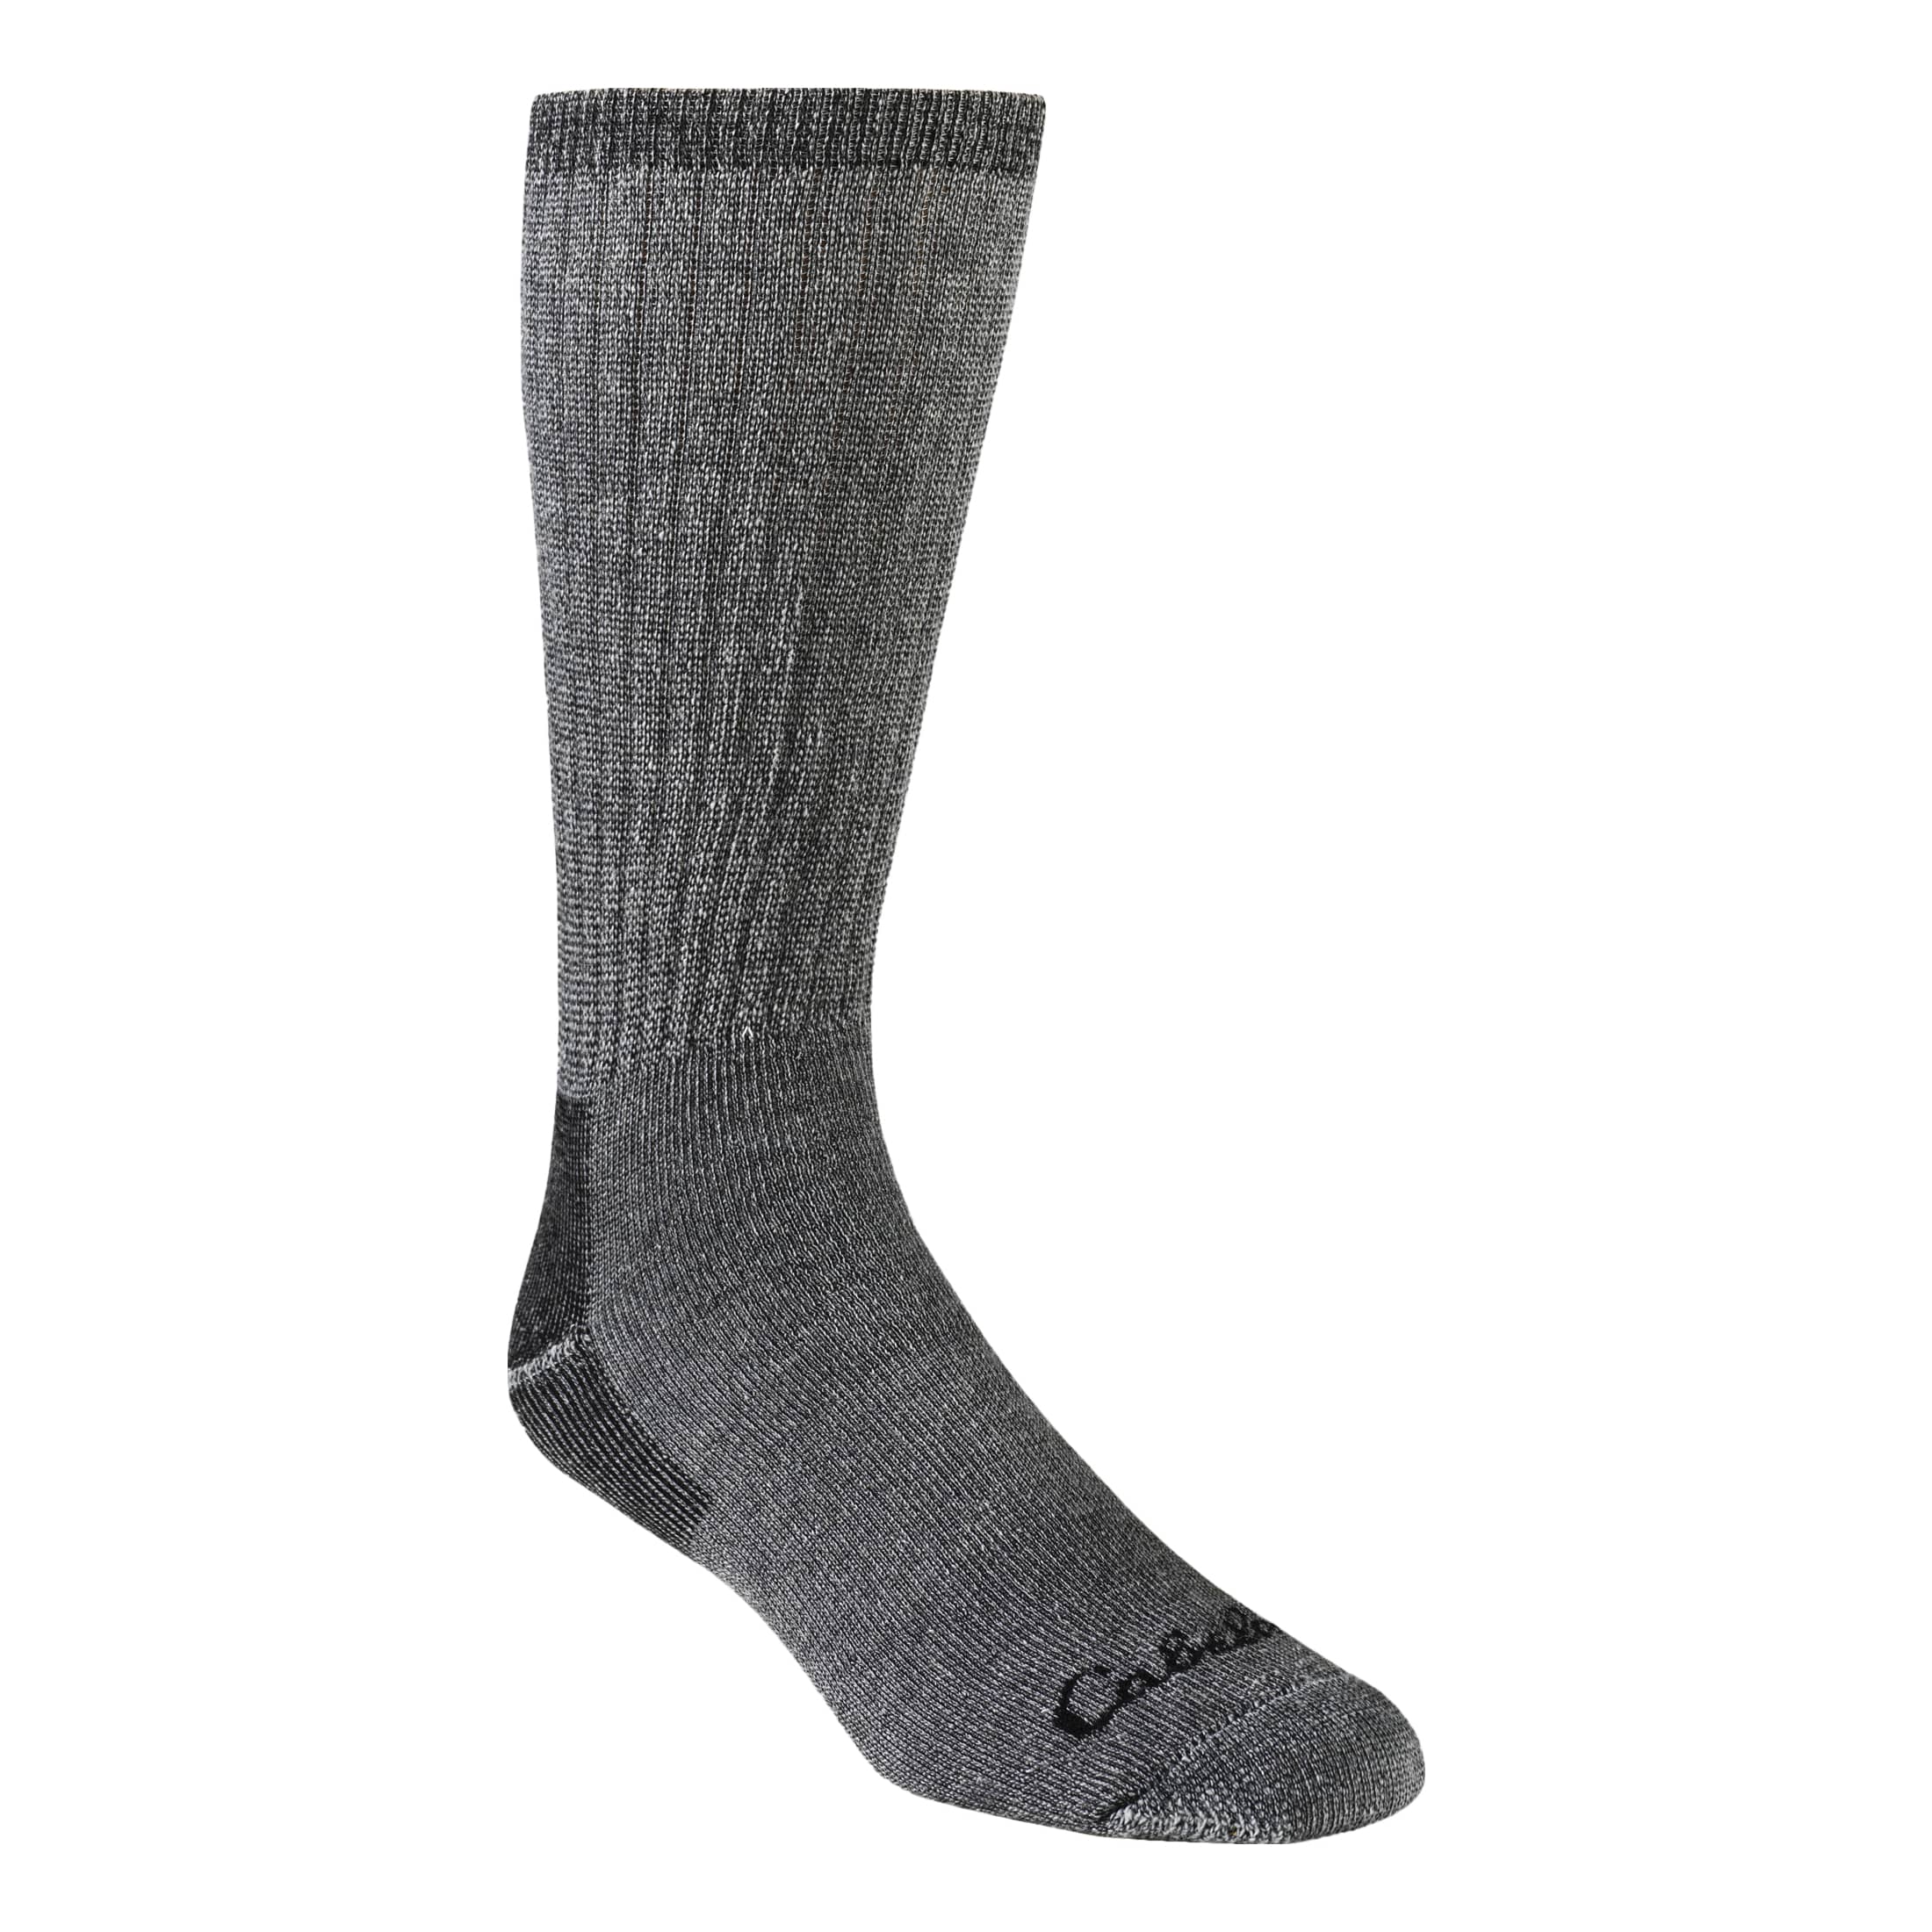 Cabela's® Instinct™ Men's 2.0 Over-The-Calf Socks